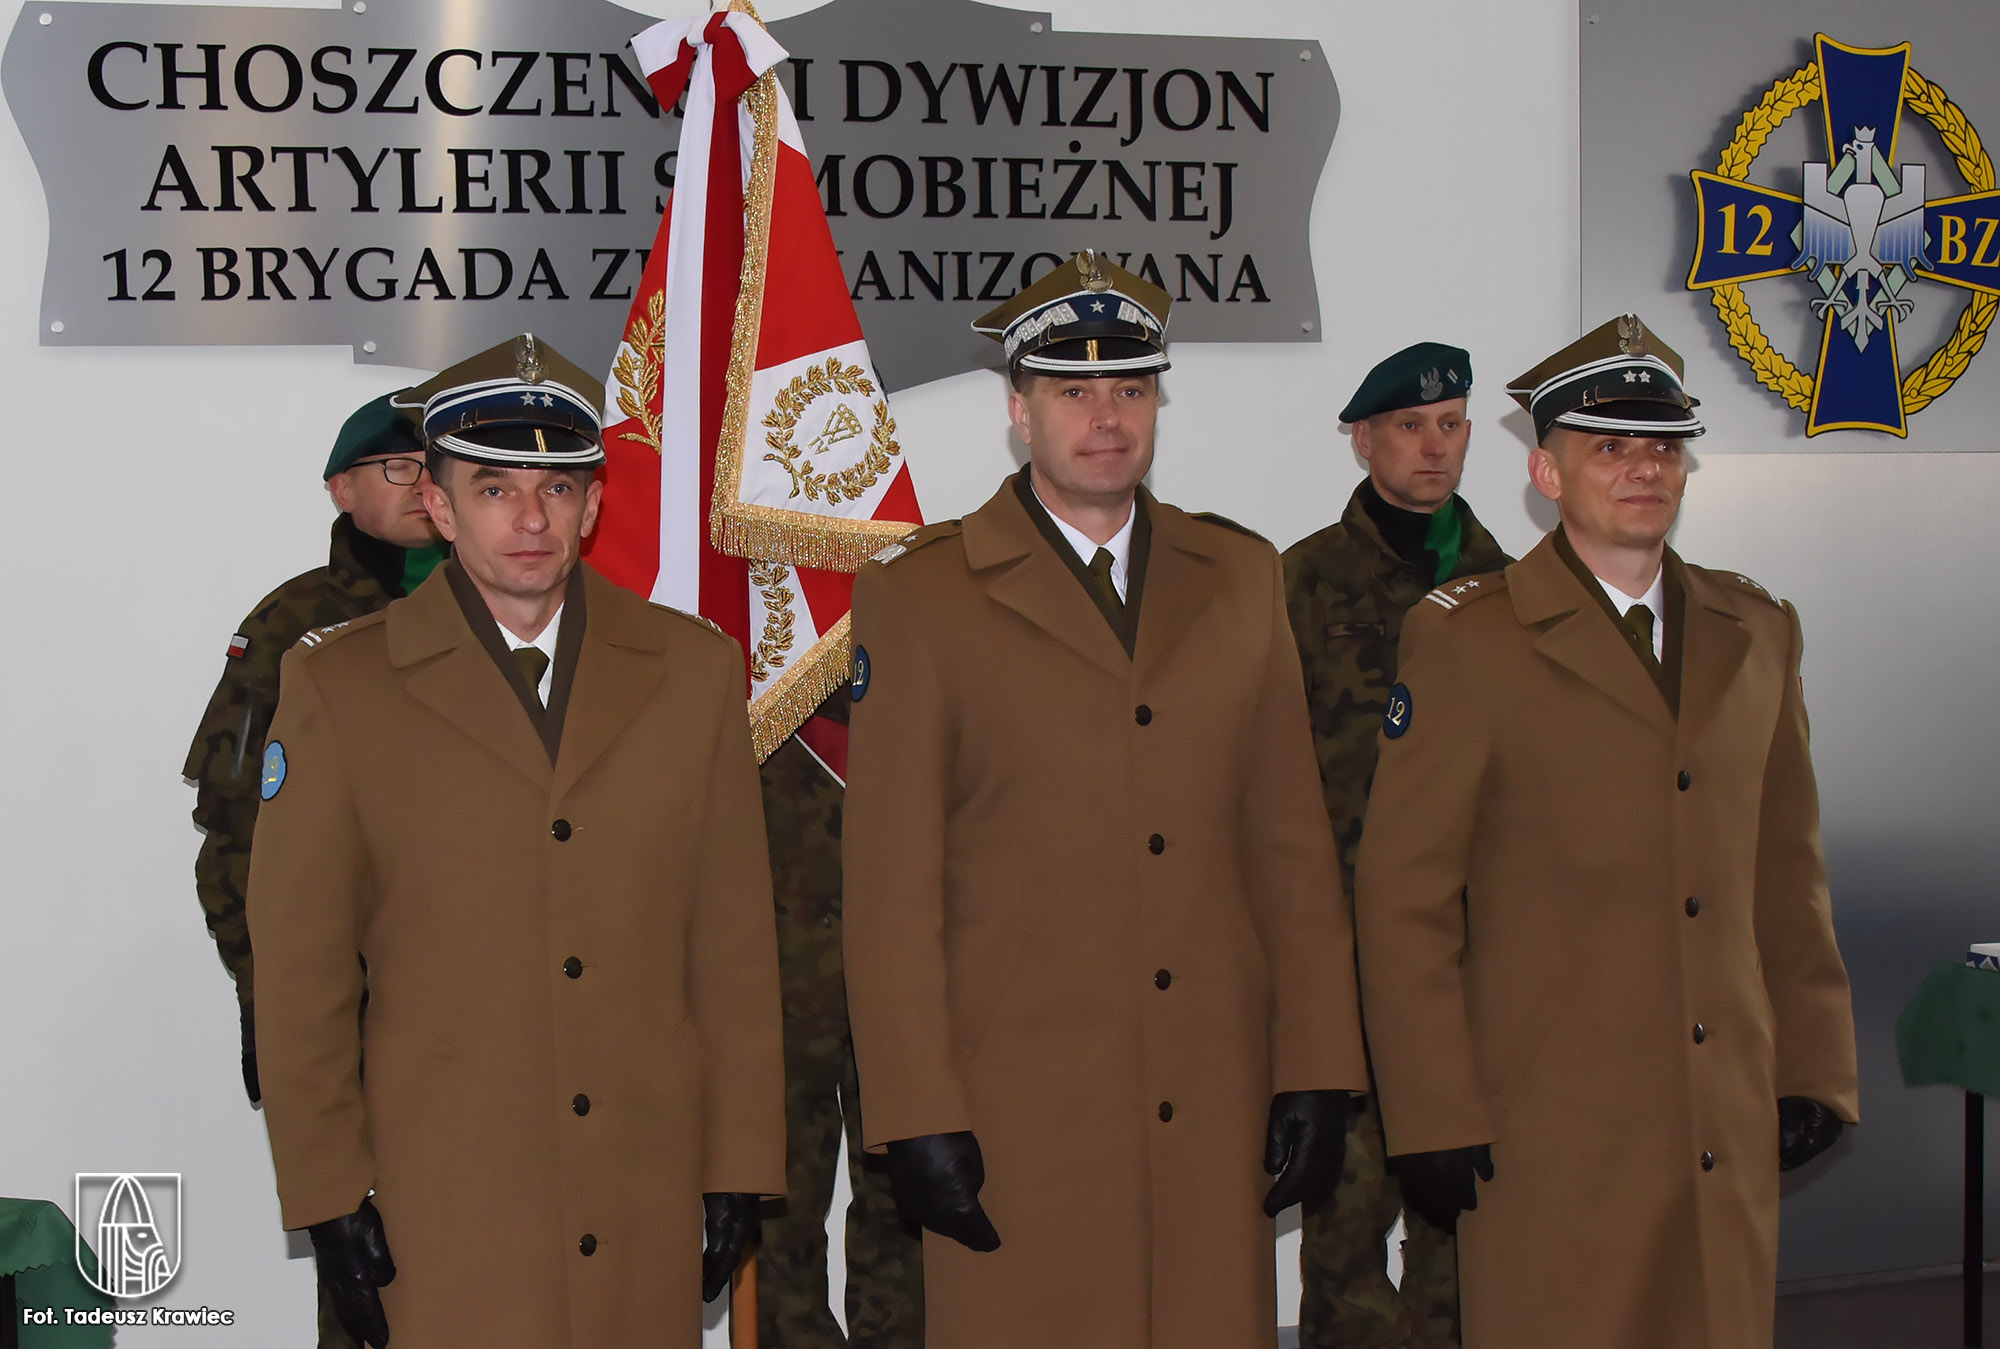 Choszczeńscy artylerzyści mają nowego dowódcę